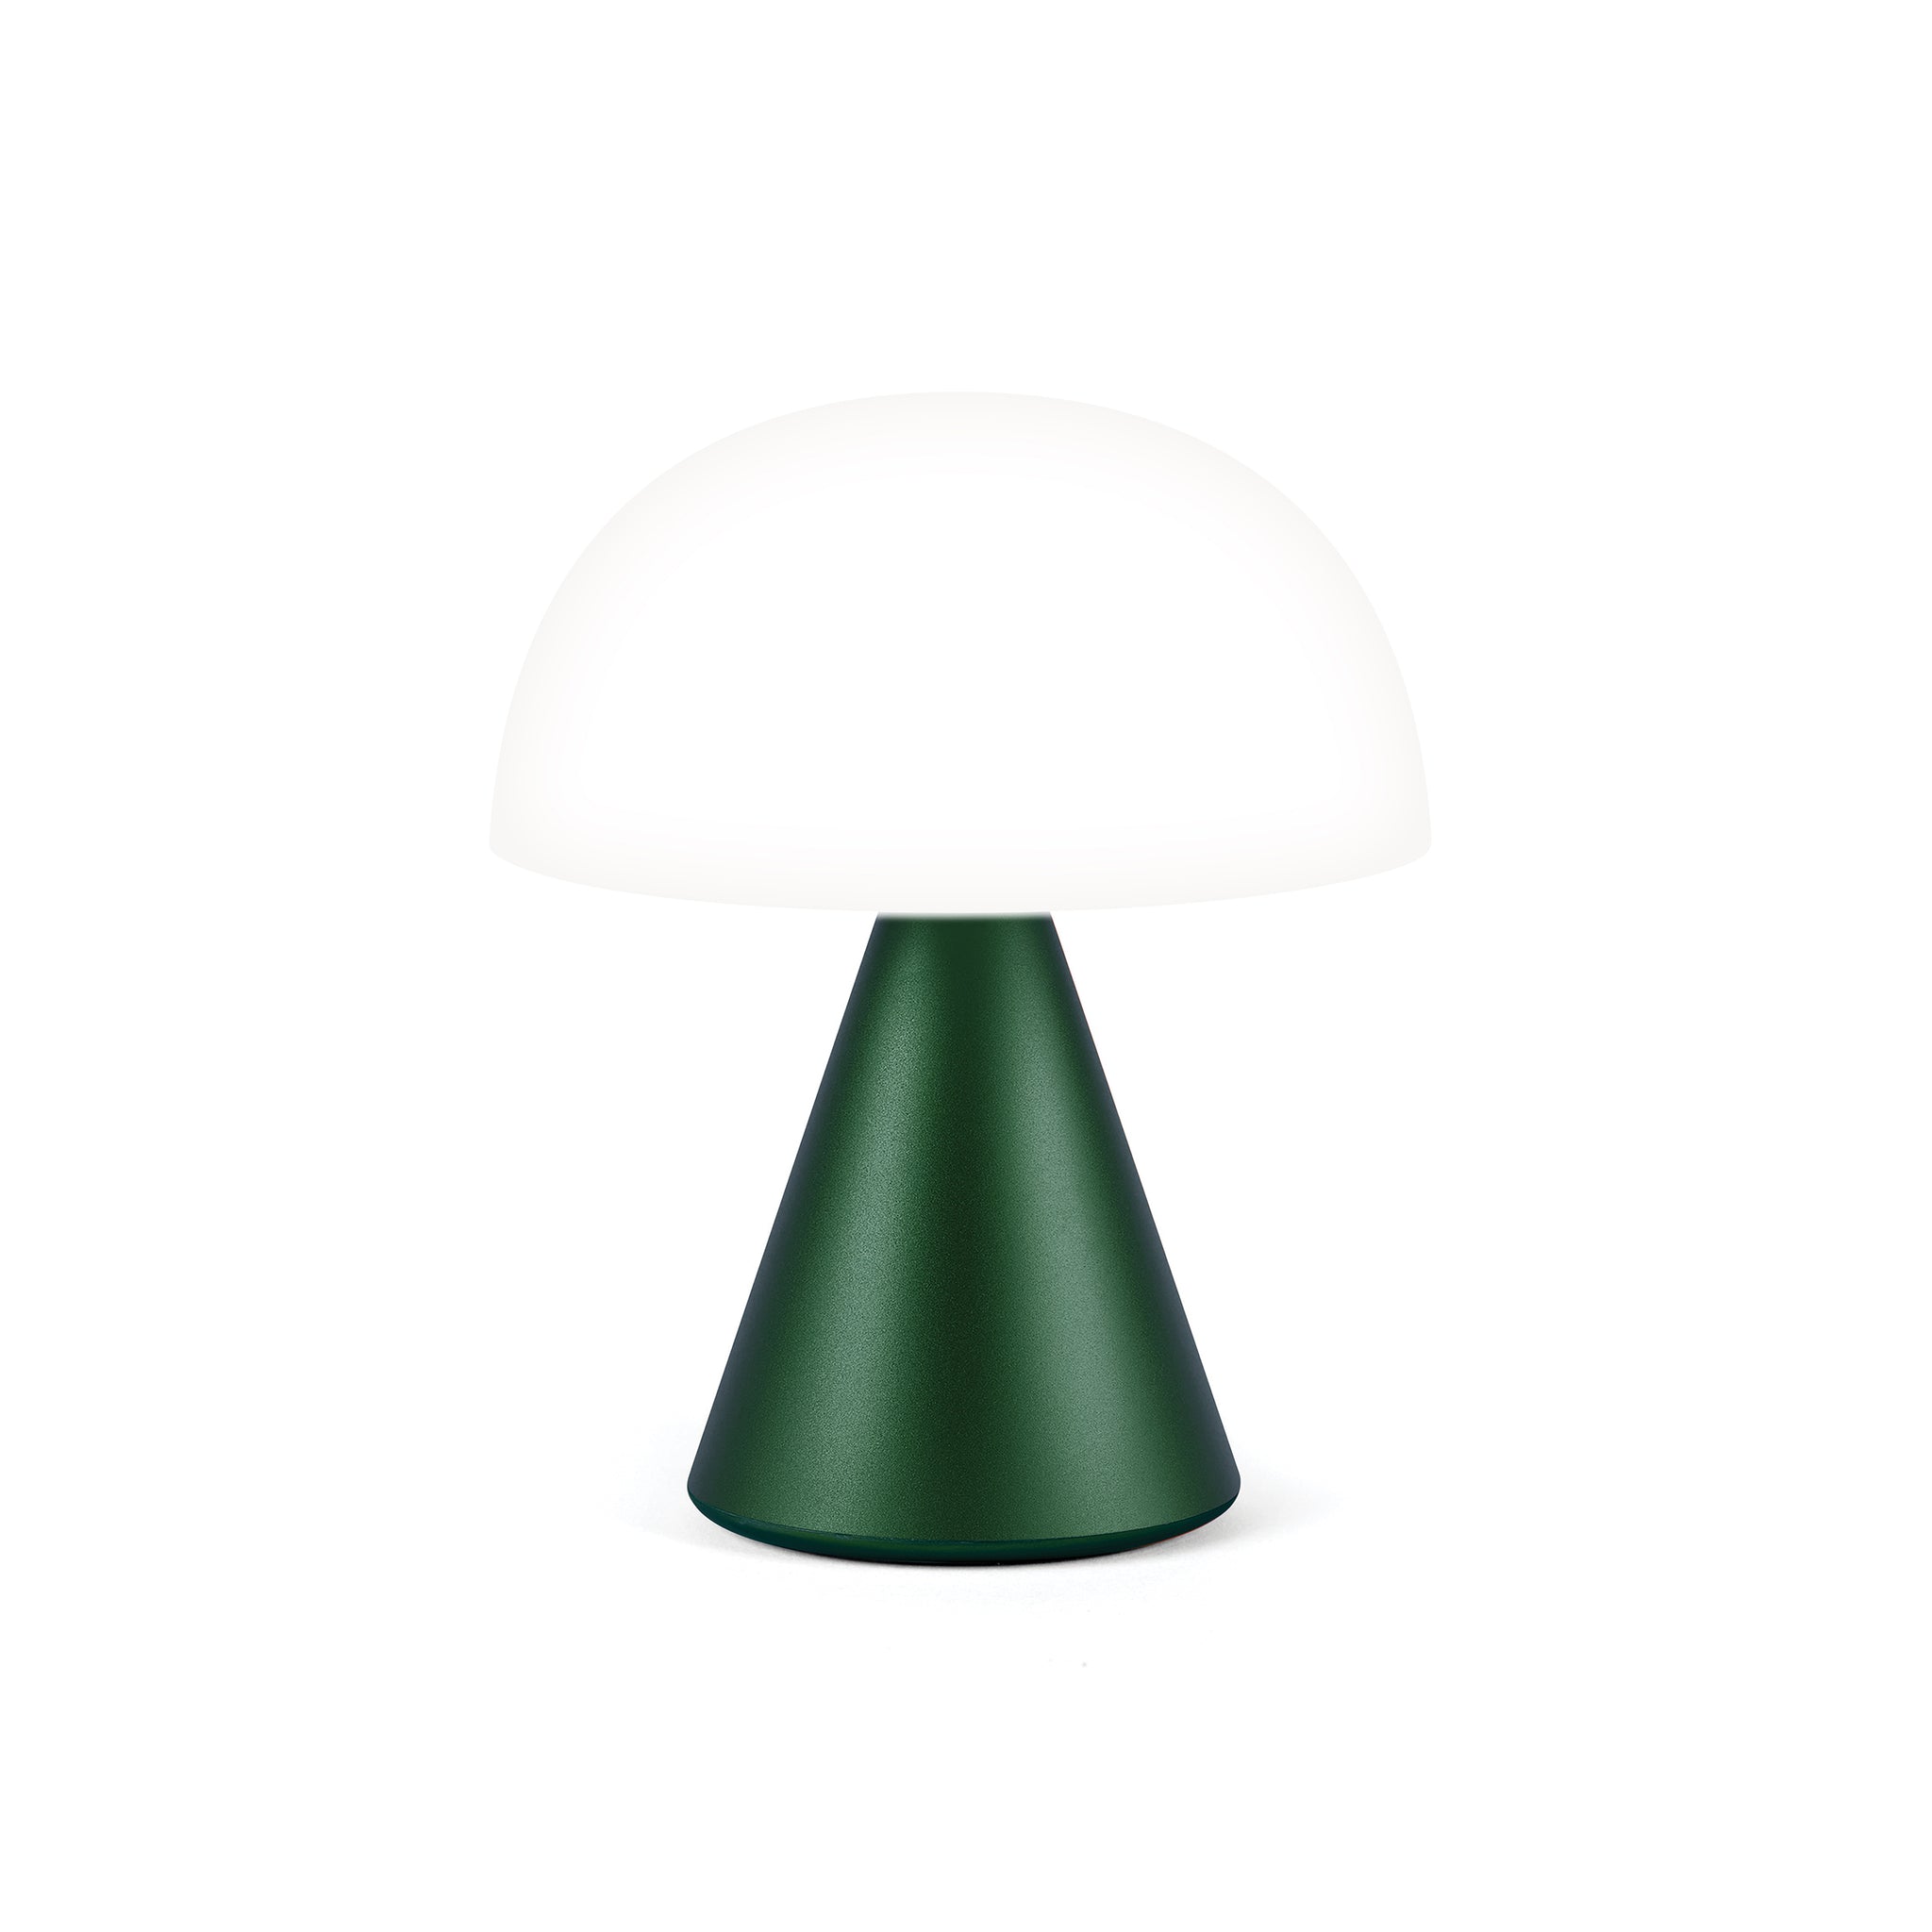 Lexon Mina Medium Donker Groen│Oplaadbare Led-Lamp│art. LH64DG1│vooraanzicht met wit licht aan